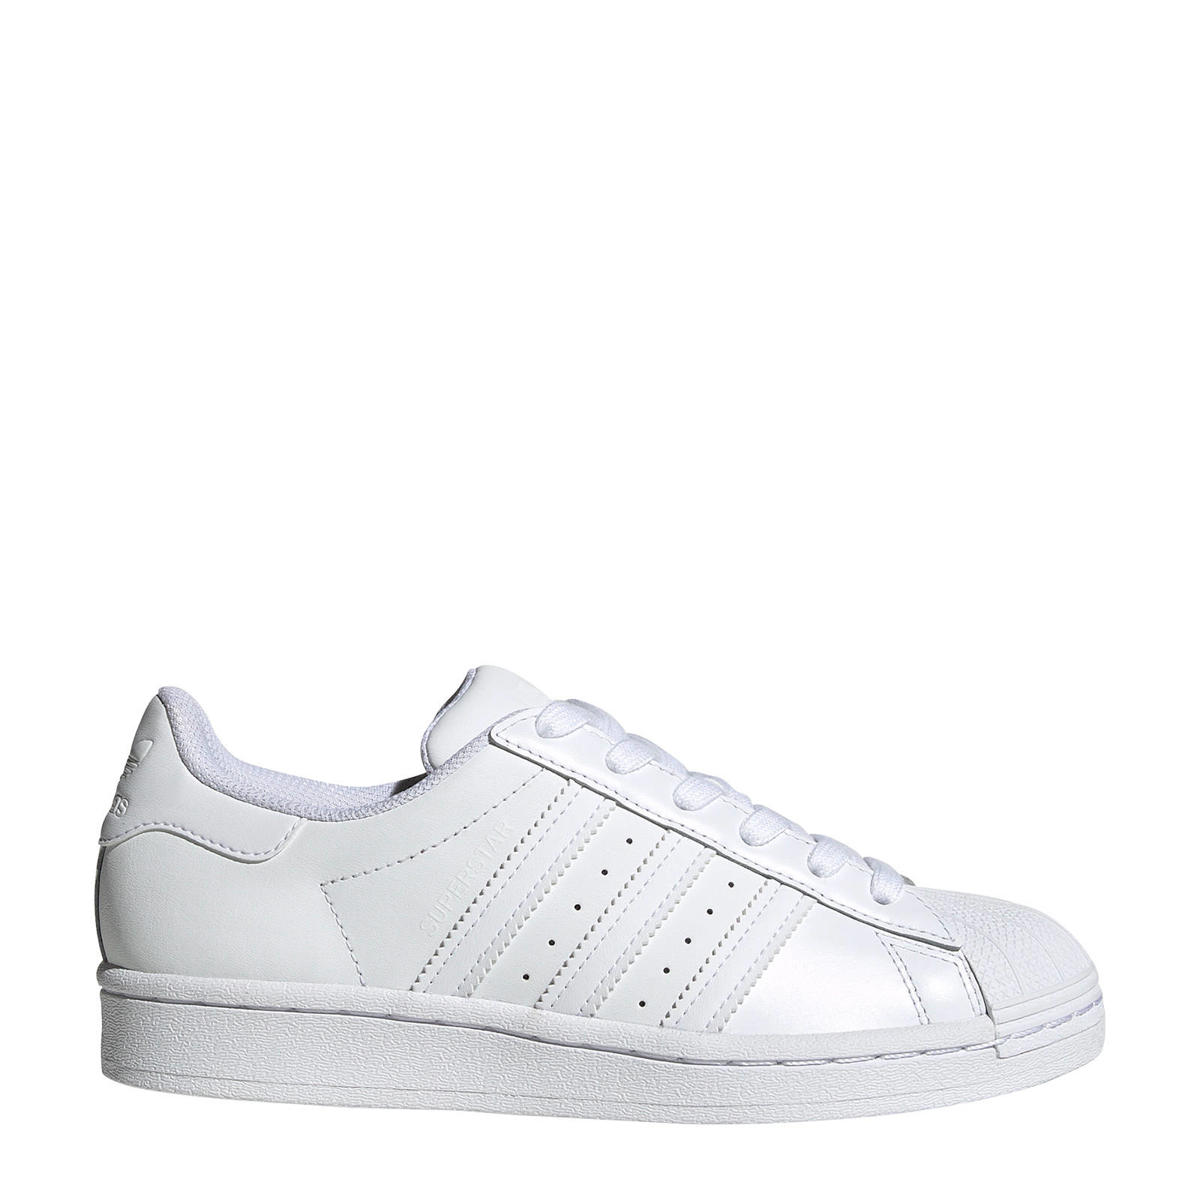 lanthaan Gedeeltelijk Verliefd adidas Originals Superstar J sneakers wit | wehkamp